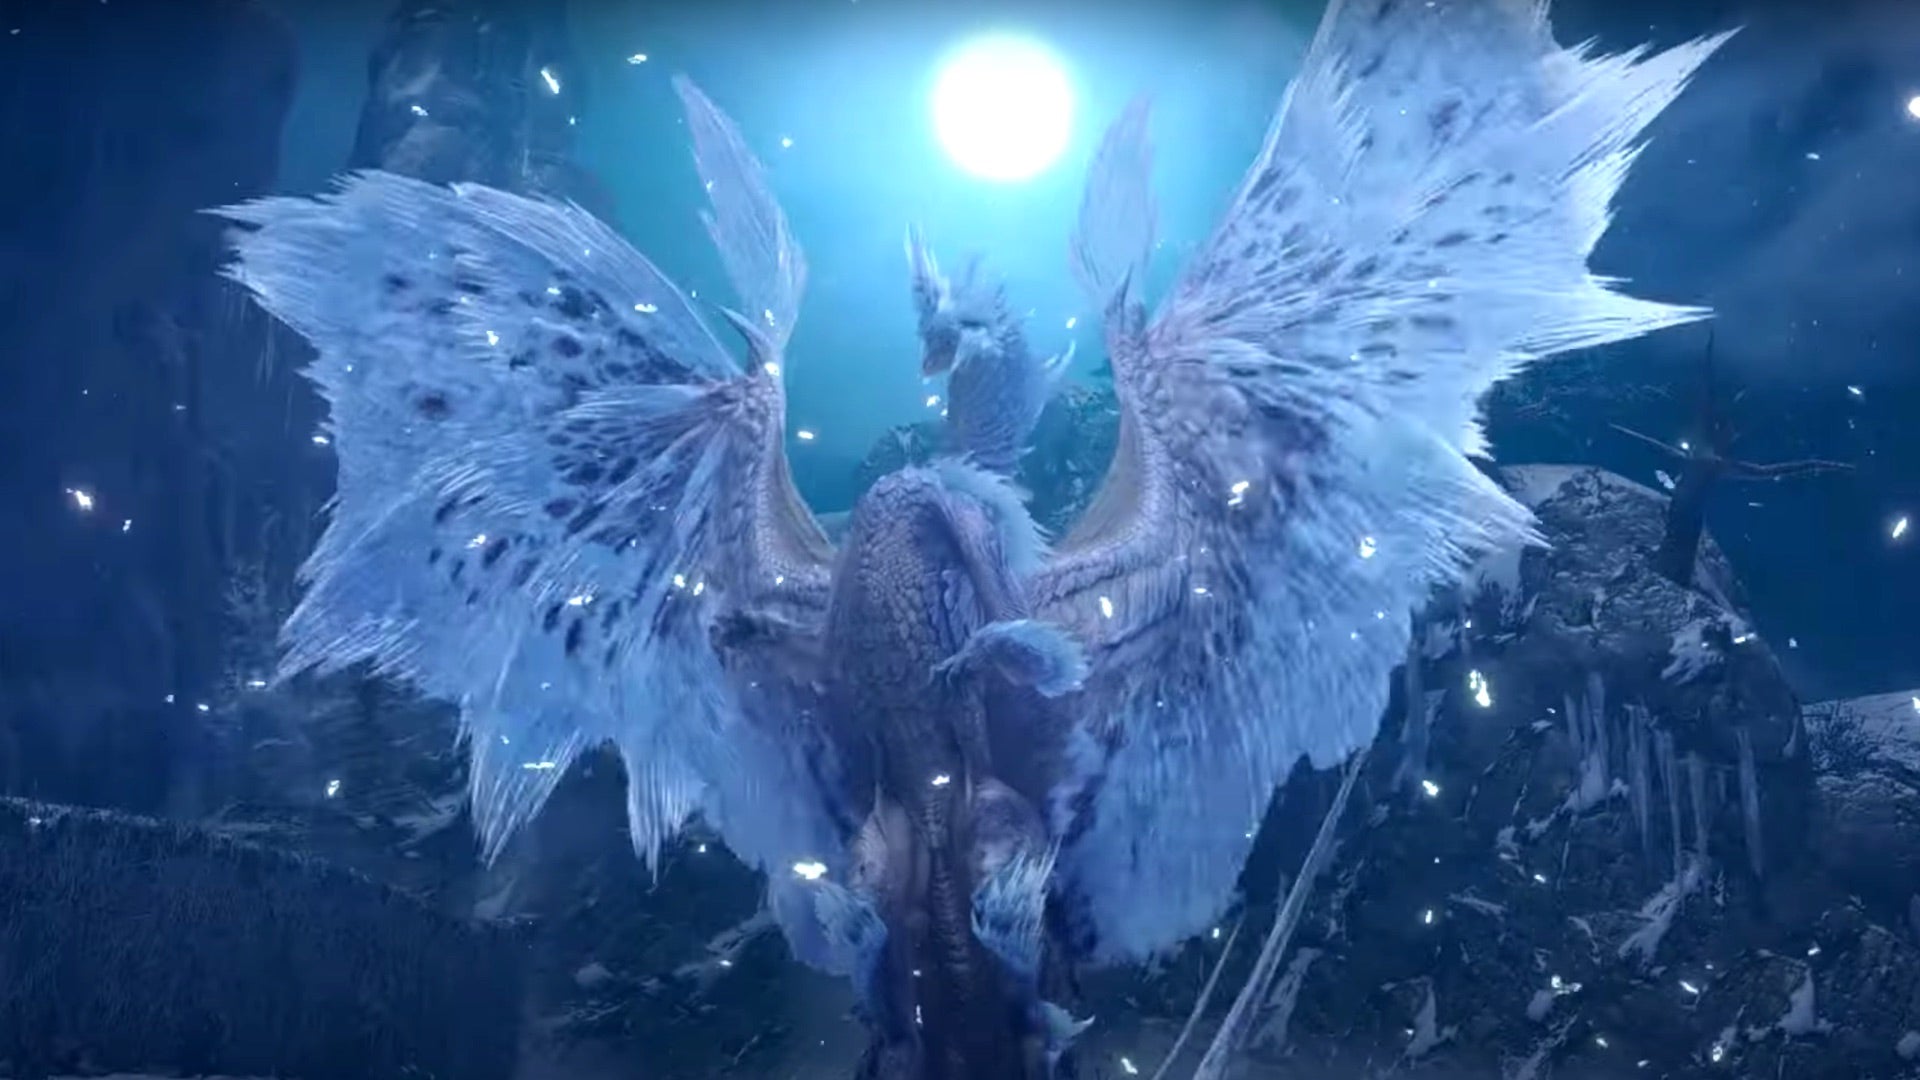 Image for Icy elder dragon Velkhana joins Monster Hunter Rise: Sunbreak next week